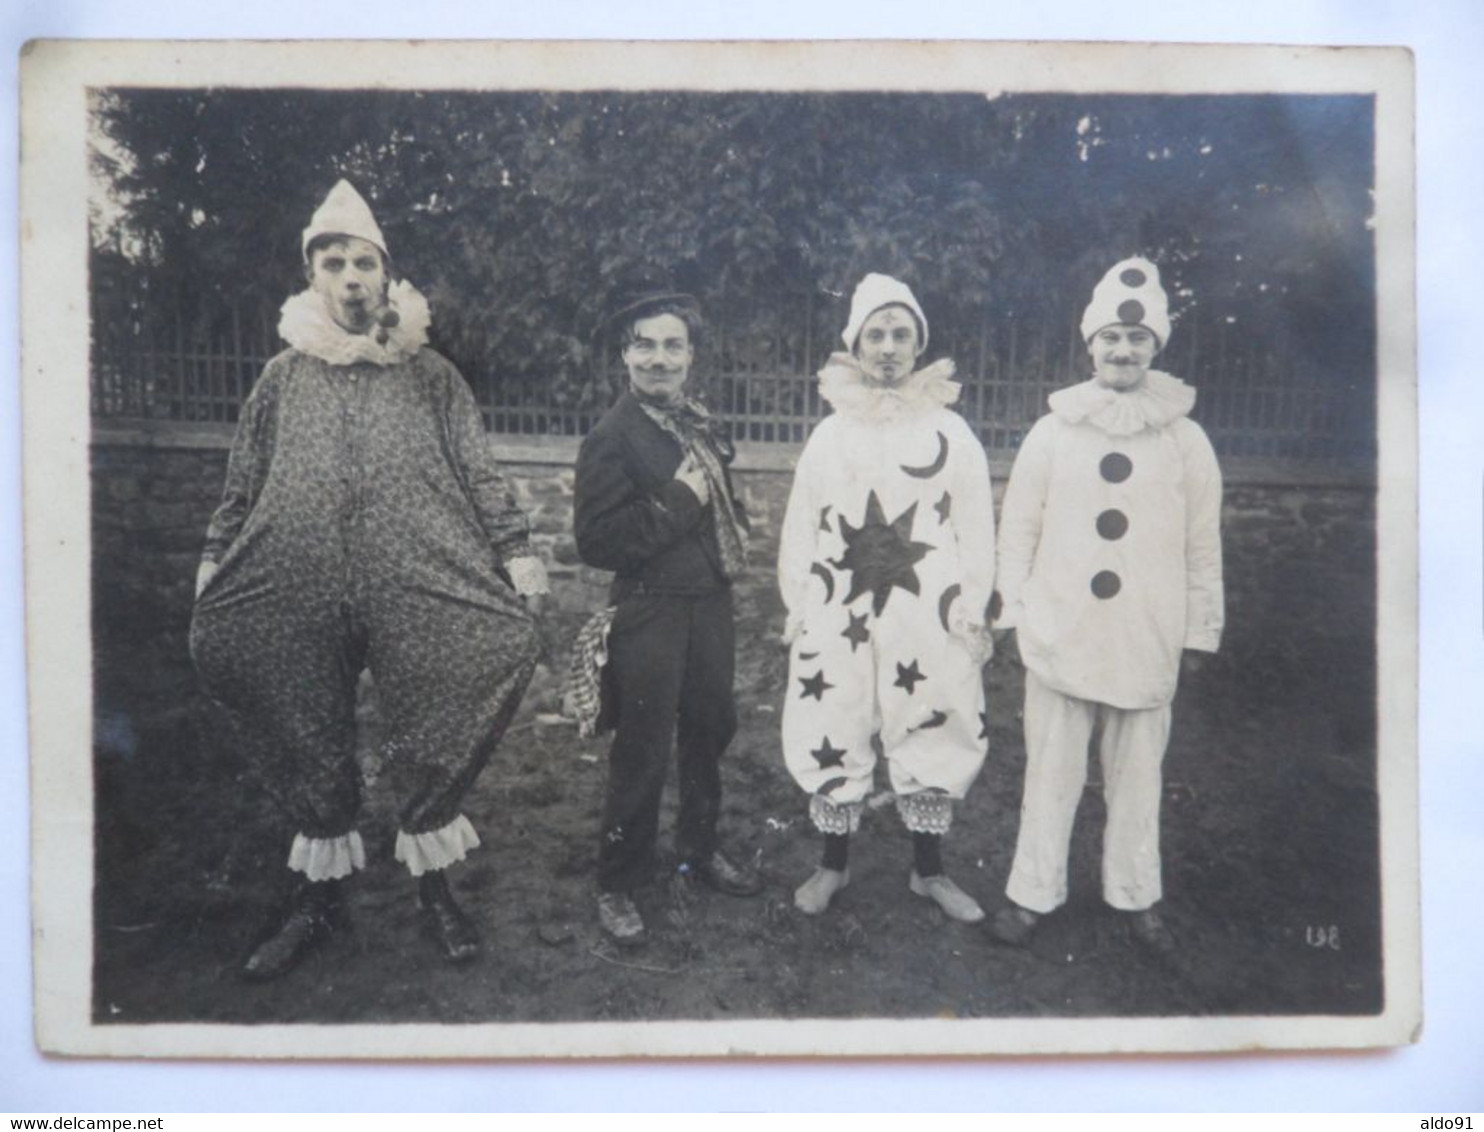 (Manche - Granville ????) - Lot de 2 photos "Kermesse, Fête, Cirque, déguisement"...à localiser (année 1924)